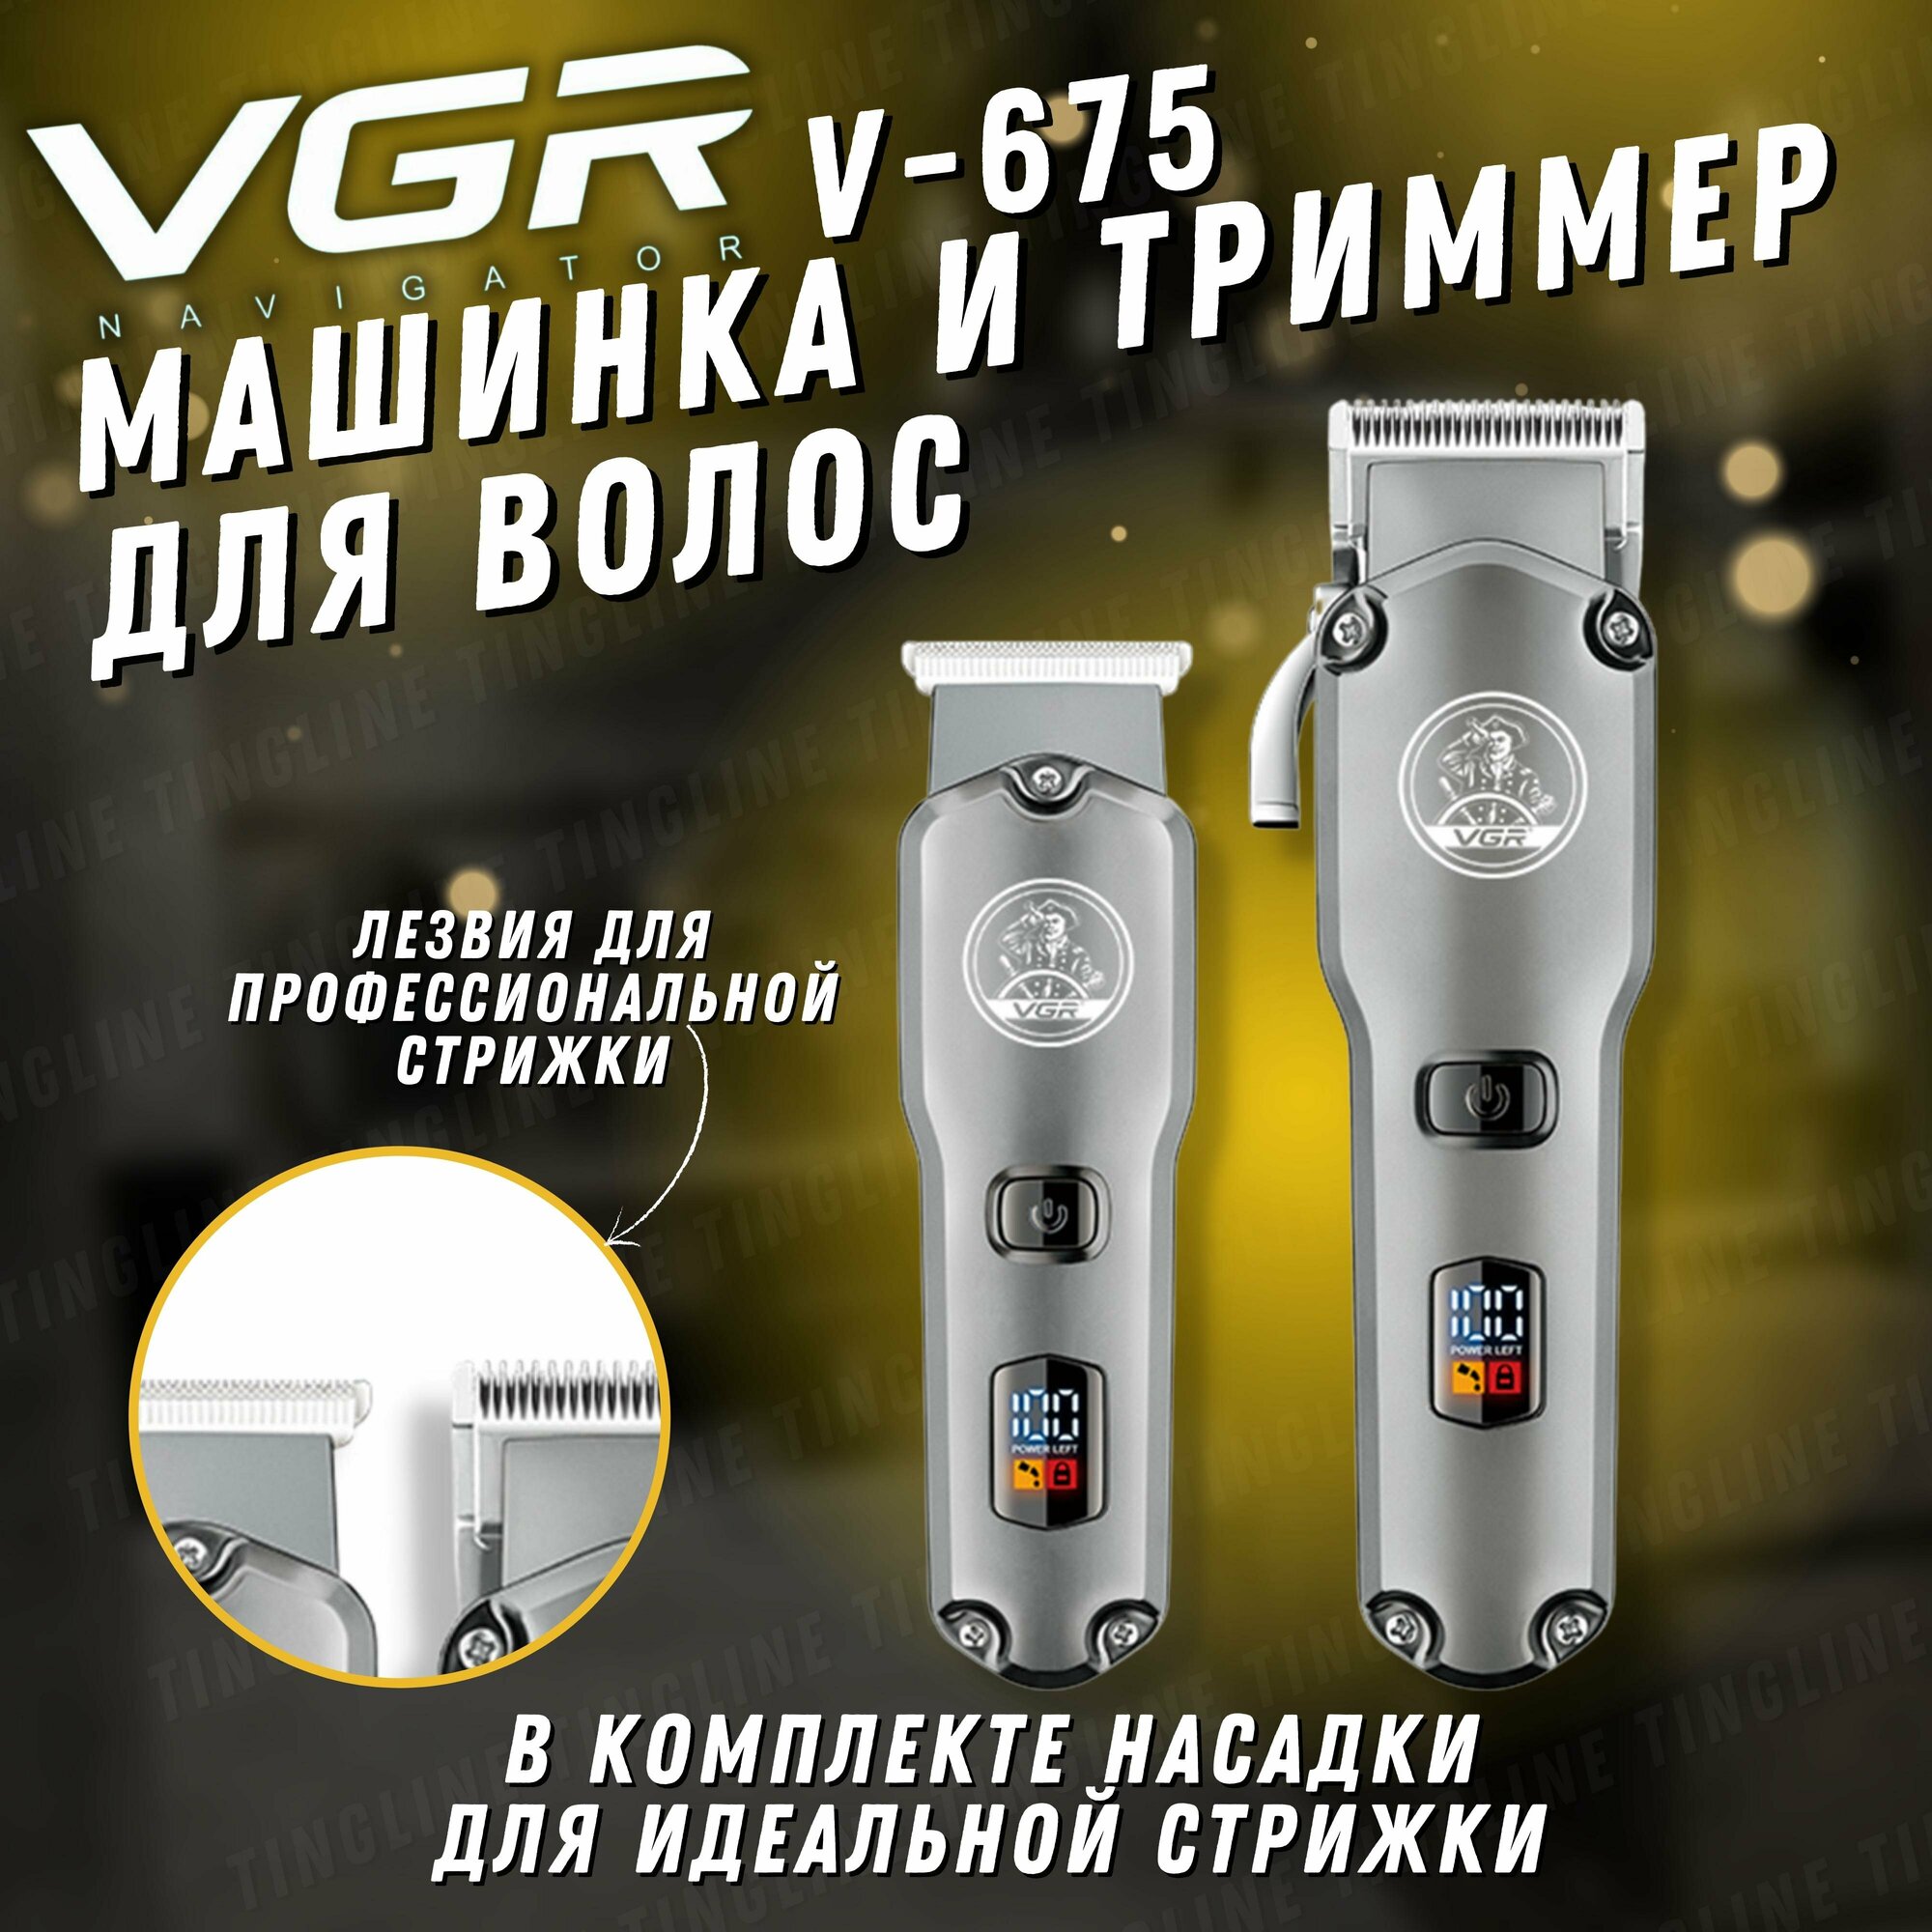 Машинка для стрижки волос профессиональная, триммер для бороды и усов 2 в 1 VGR V-675 - фотография № 1